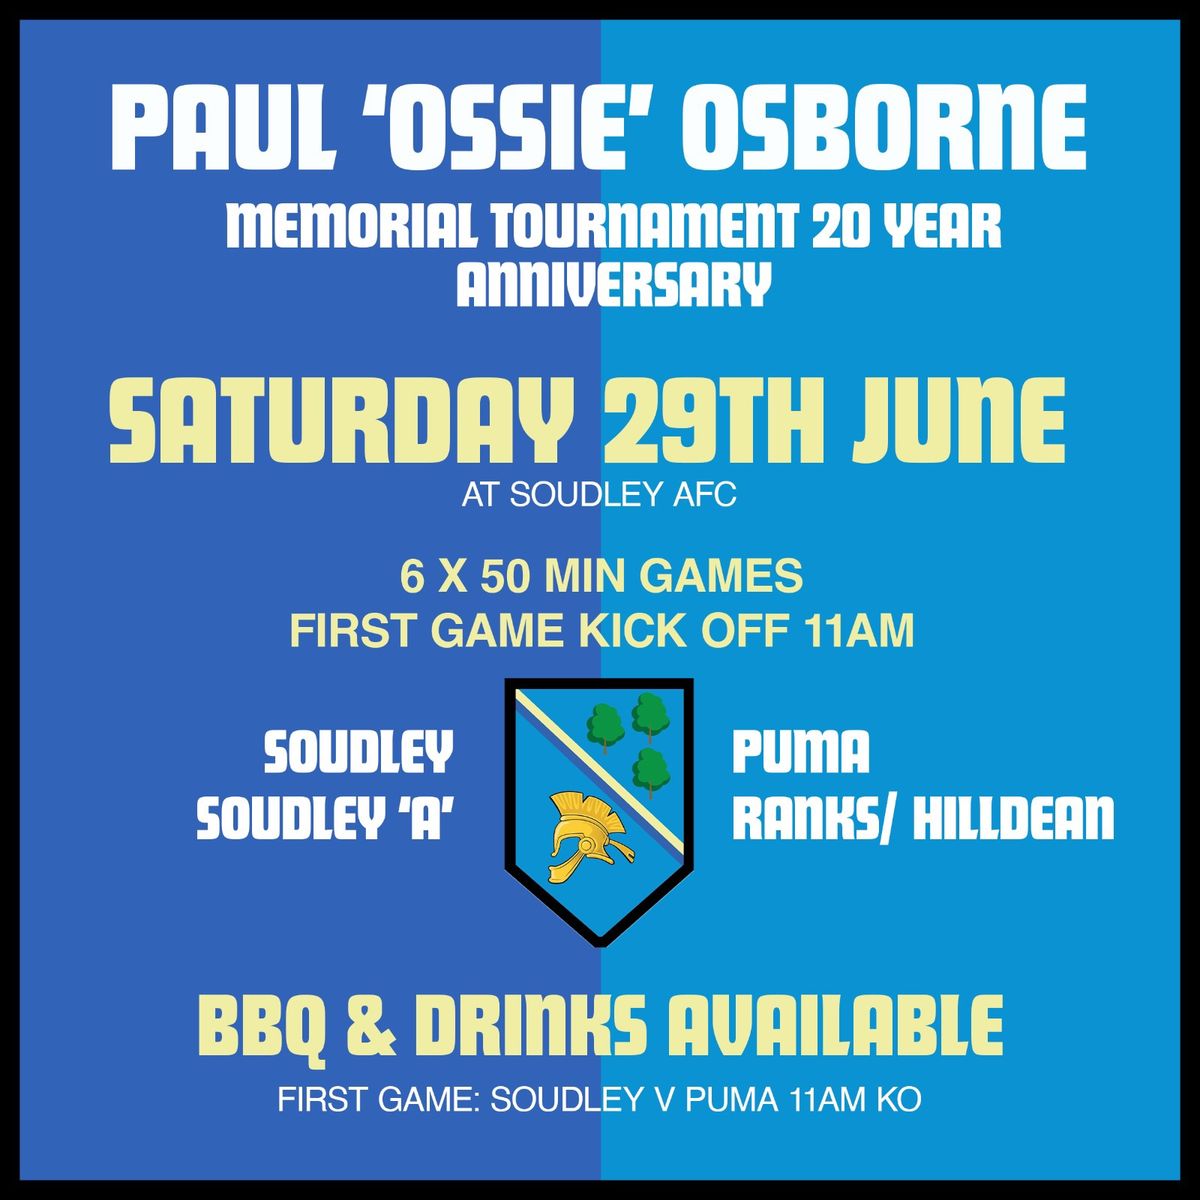 Paul \u2018Ossie\u2019 Osborne Memorial Tournament